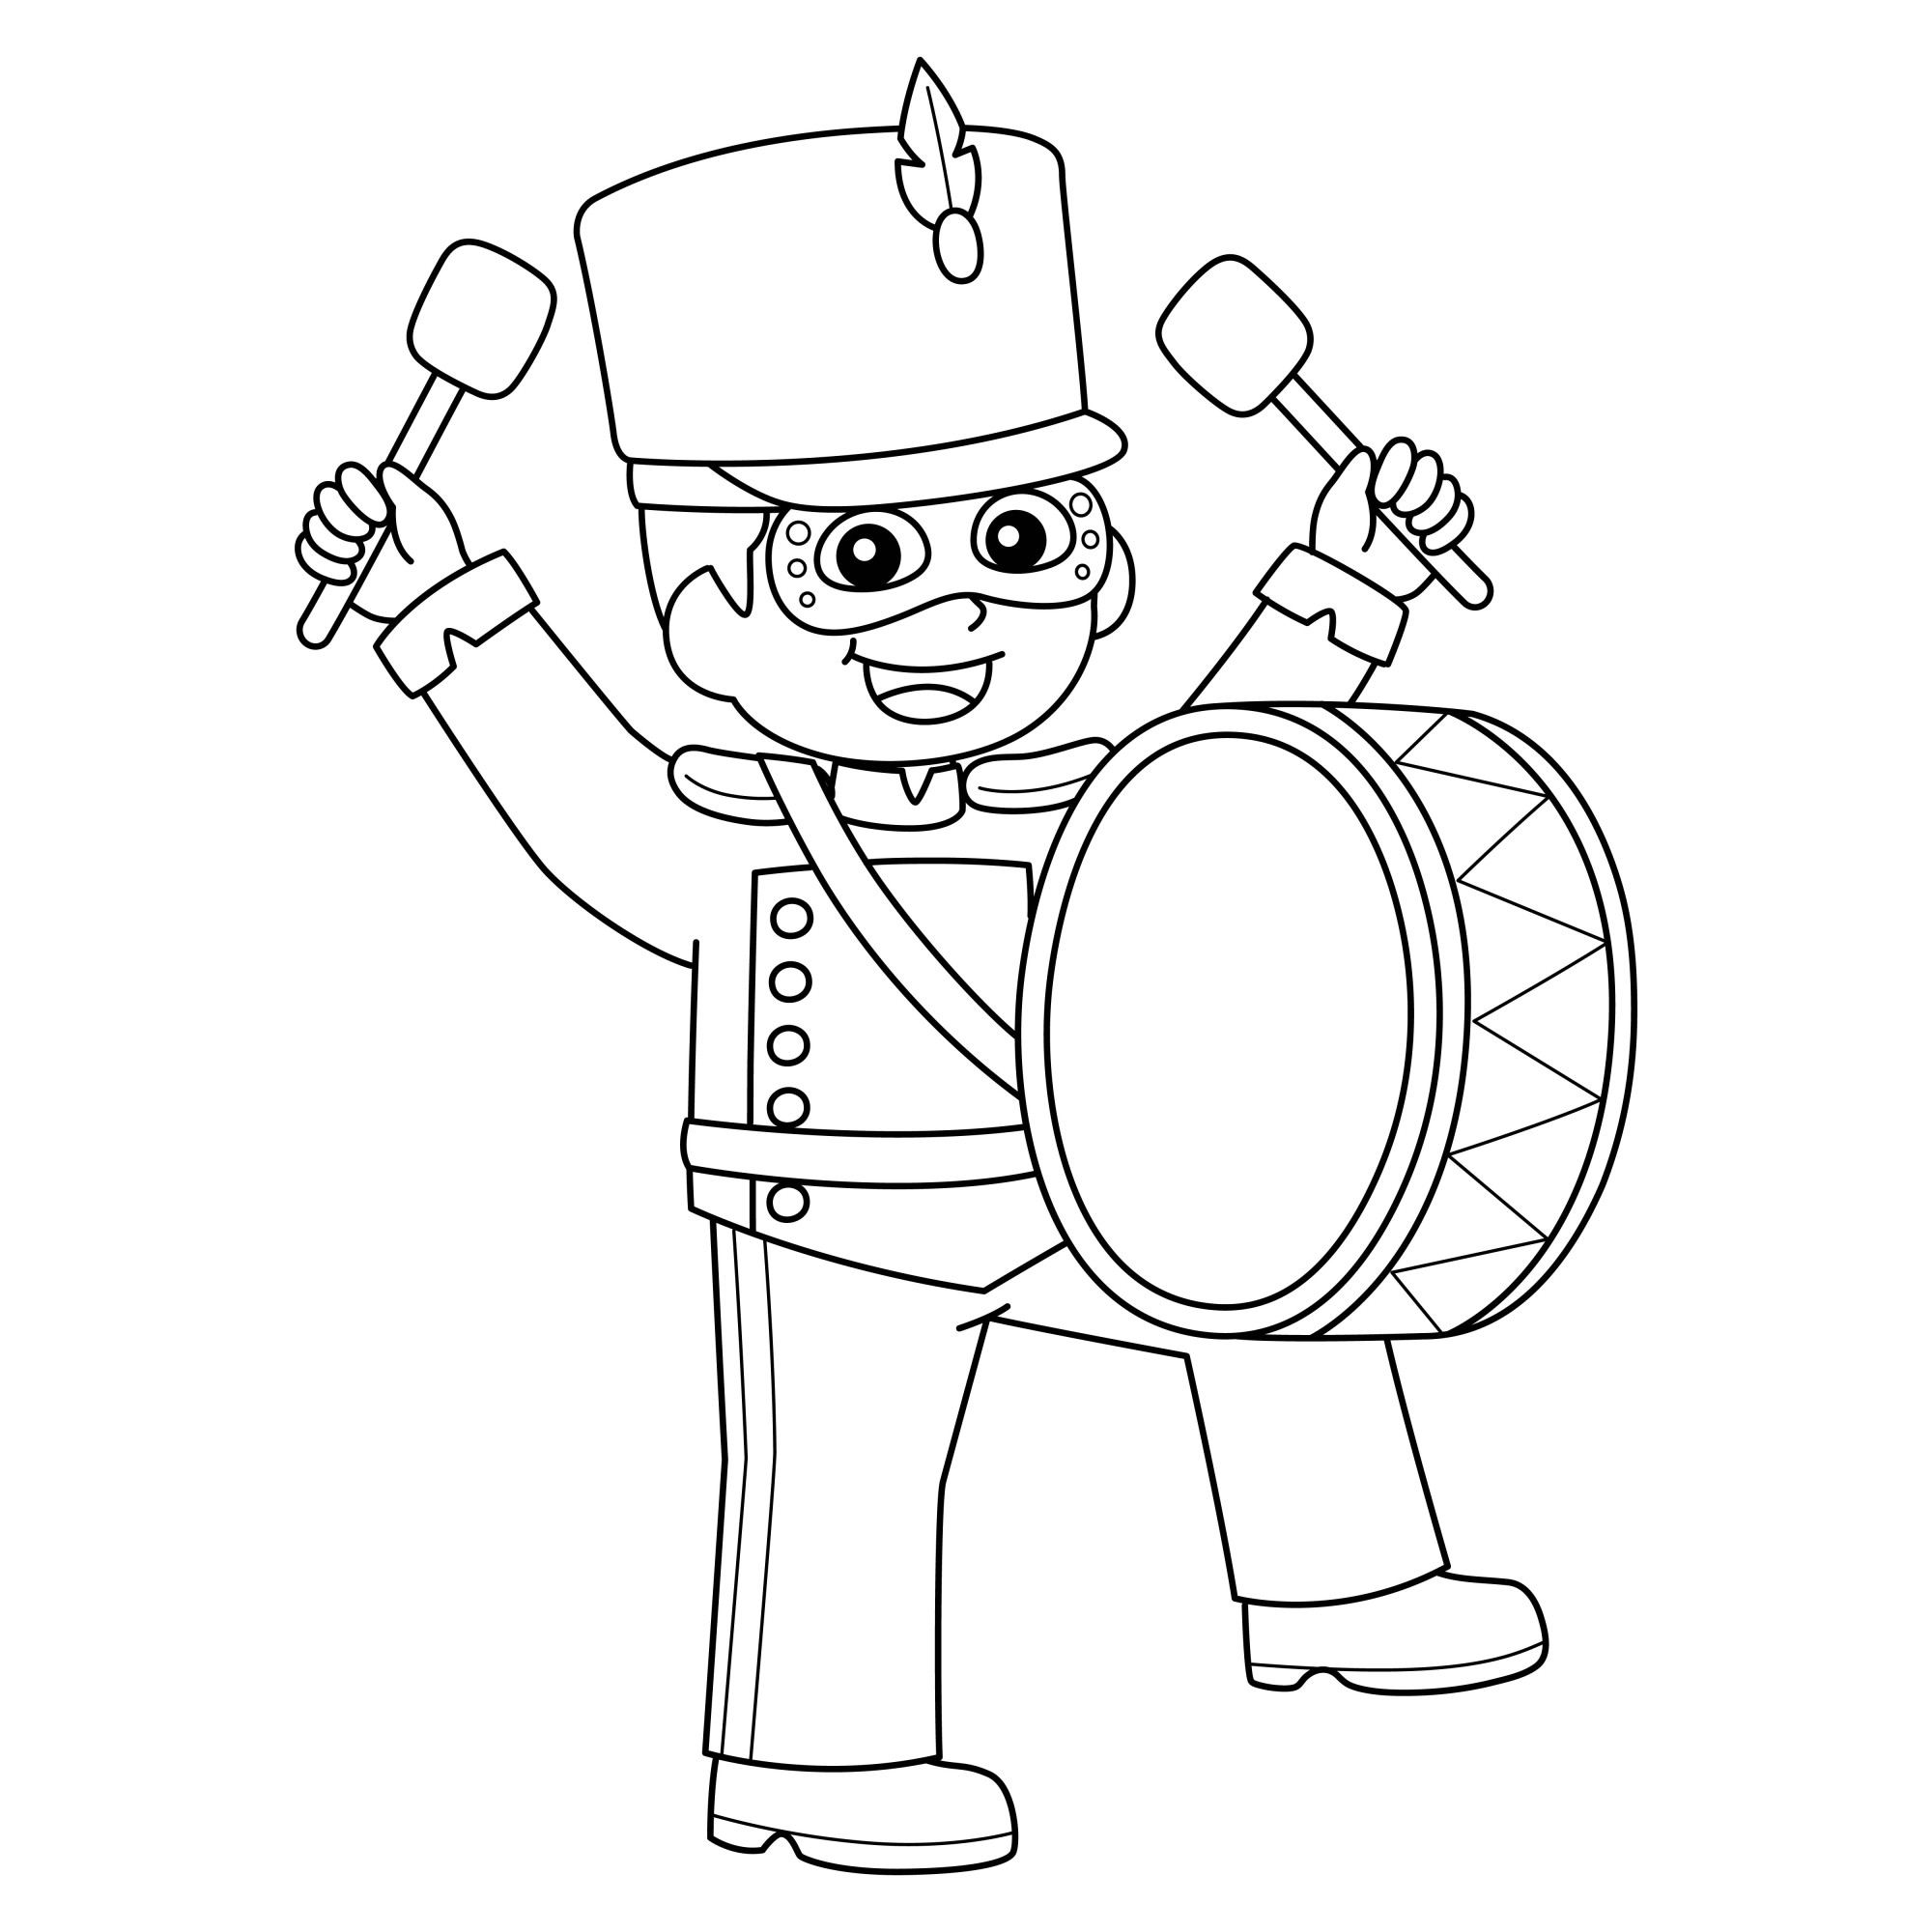 Раскраска для детей: игрушка солдатик с барабаном